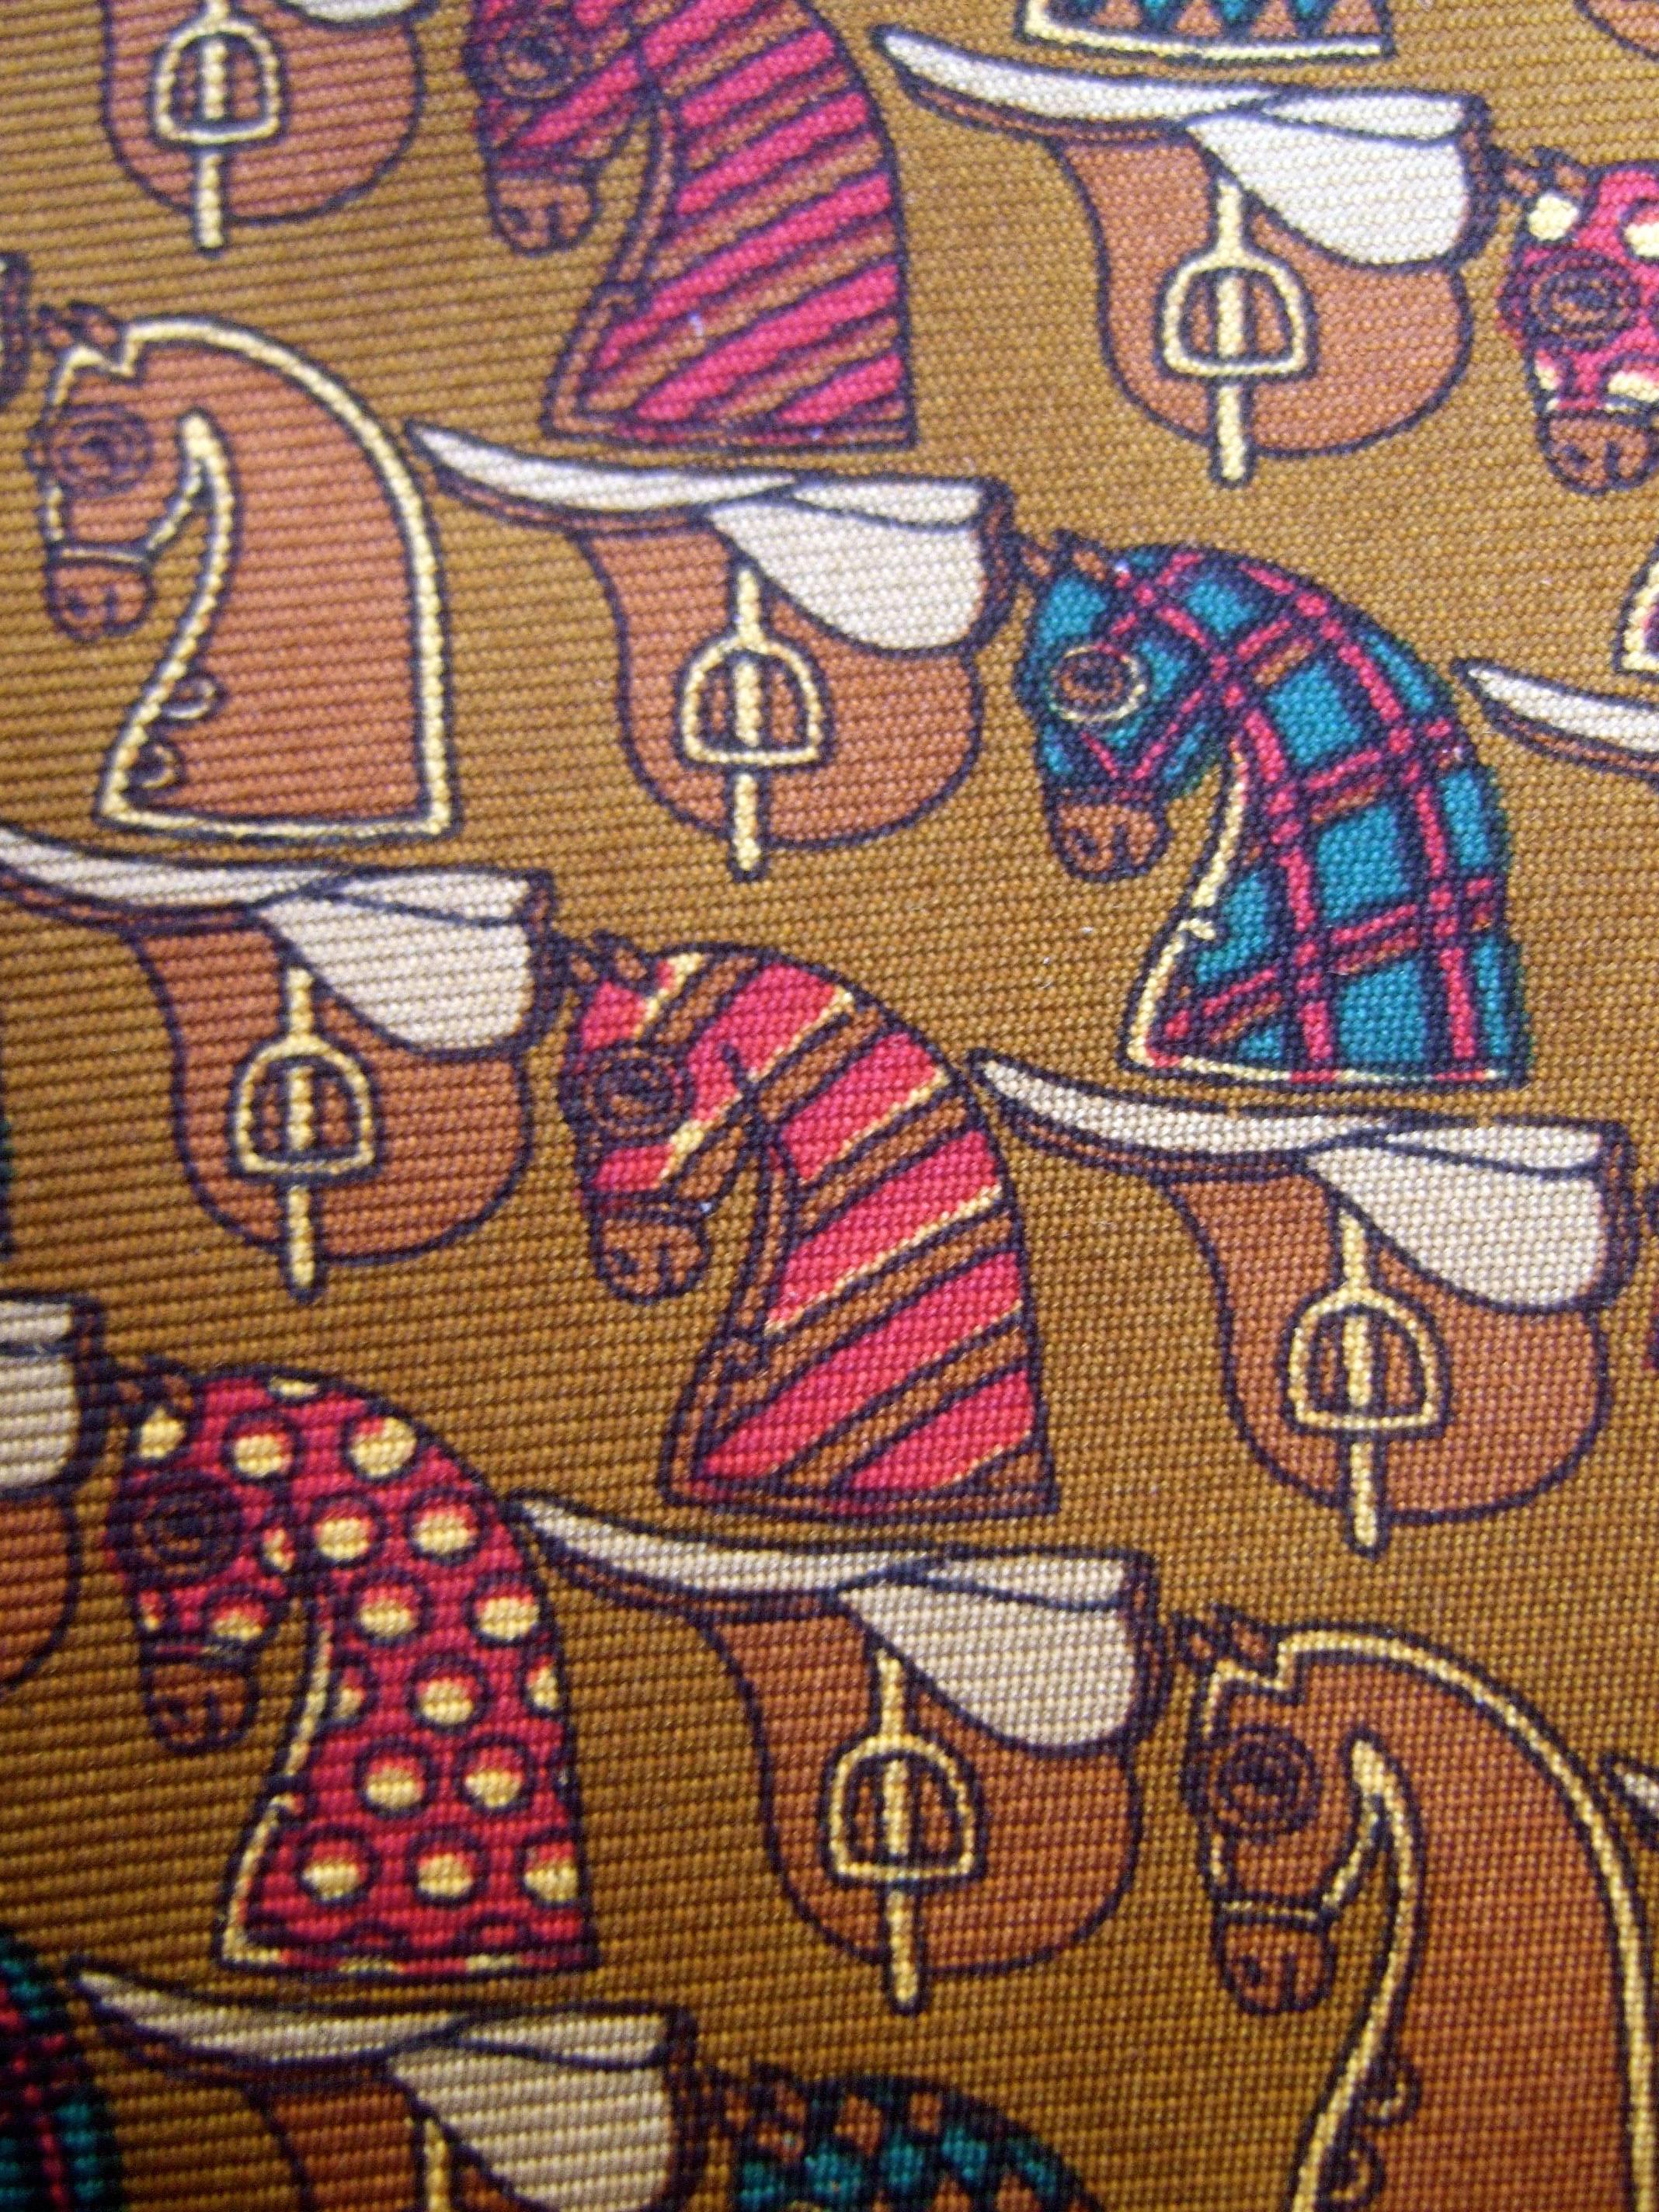 Cravate en soie sur le thème de l'équitation de Burberry c 1990
L'élégante cravate en soie est illustrée par une série de chevaux
des personnages distingués dans différents motifs

Sous les figures de chevaux se trouvent des selles placées contre
un